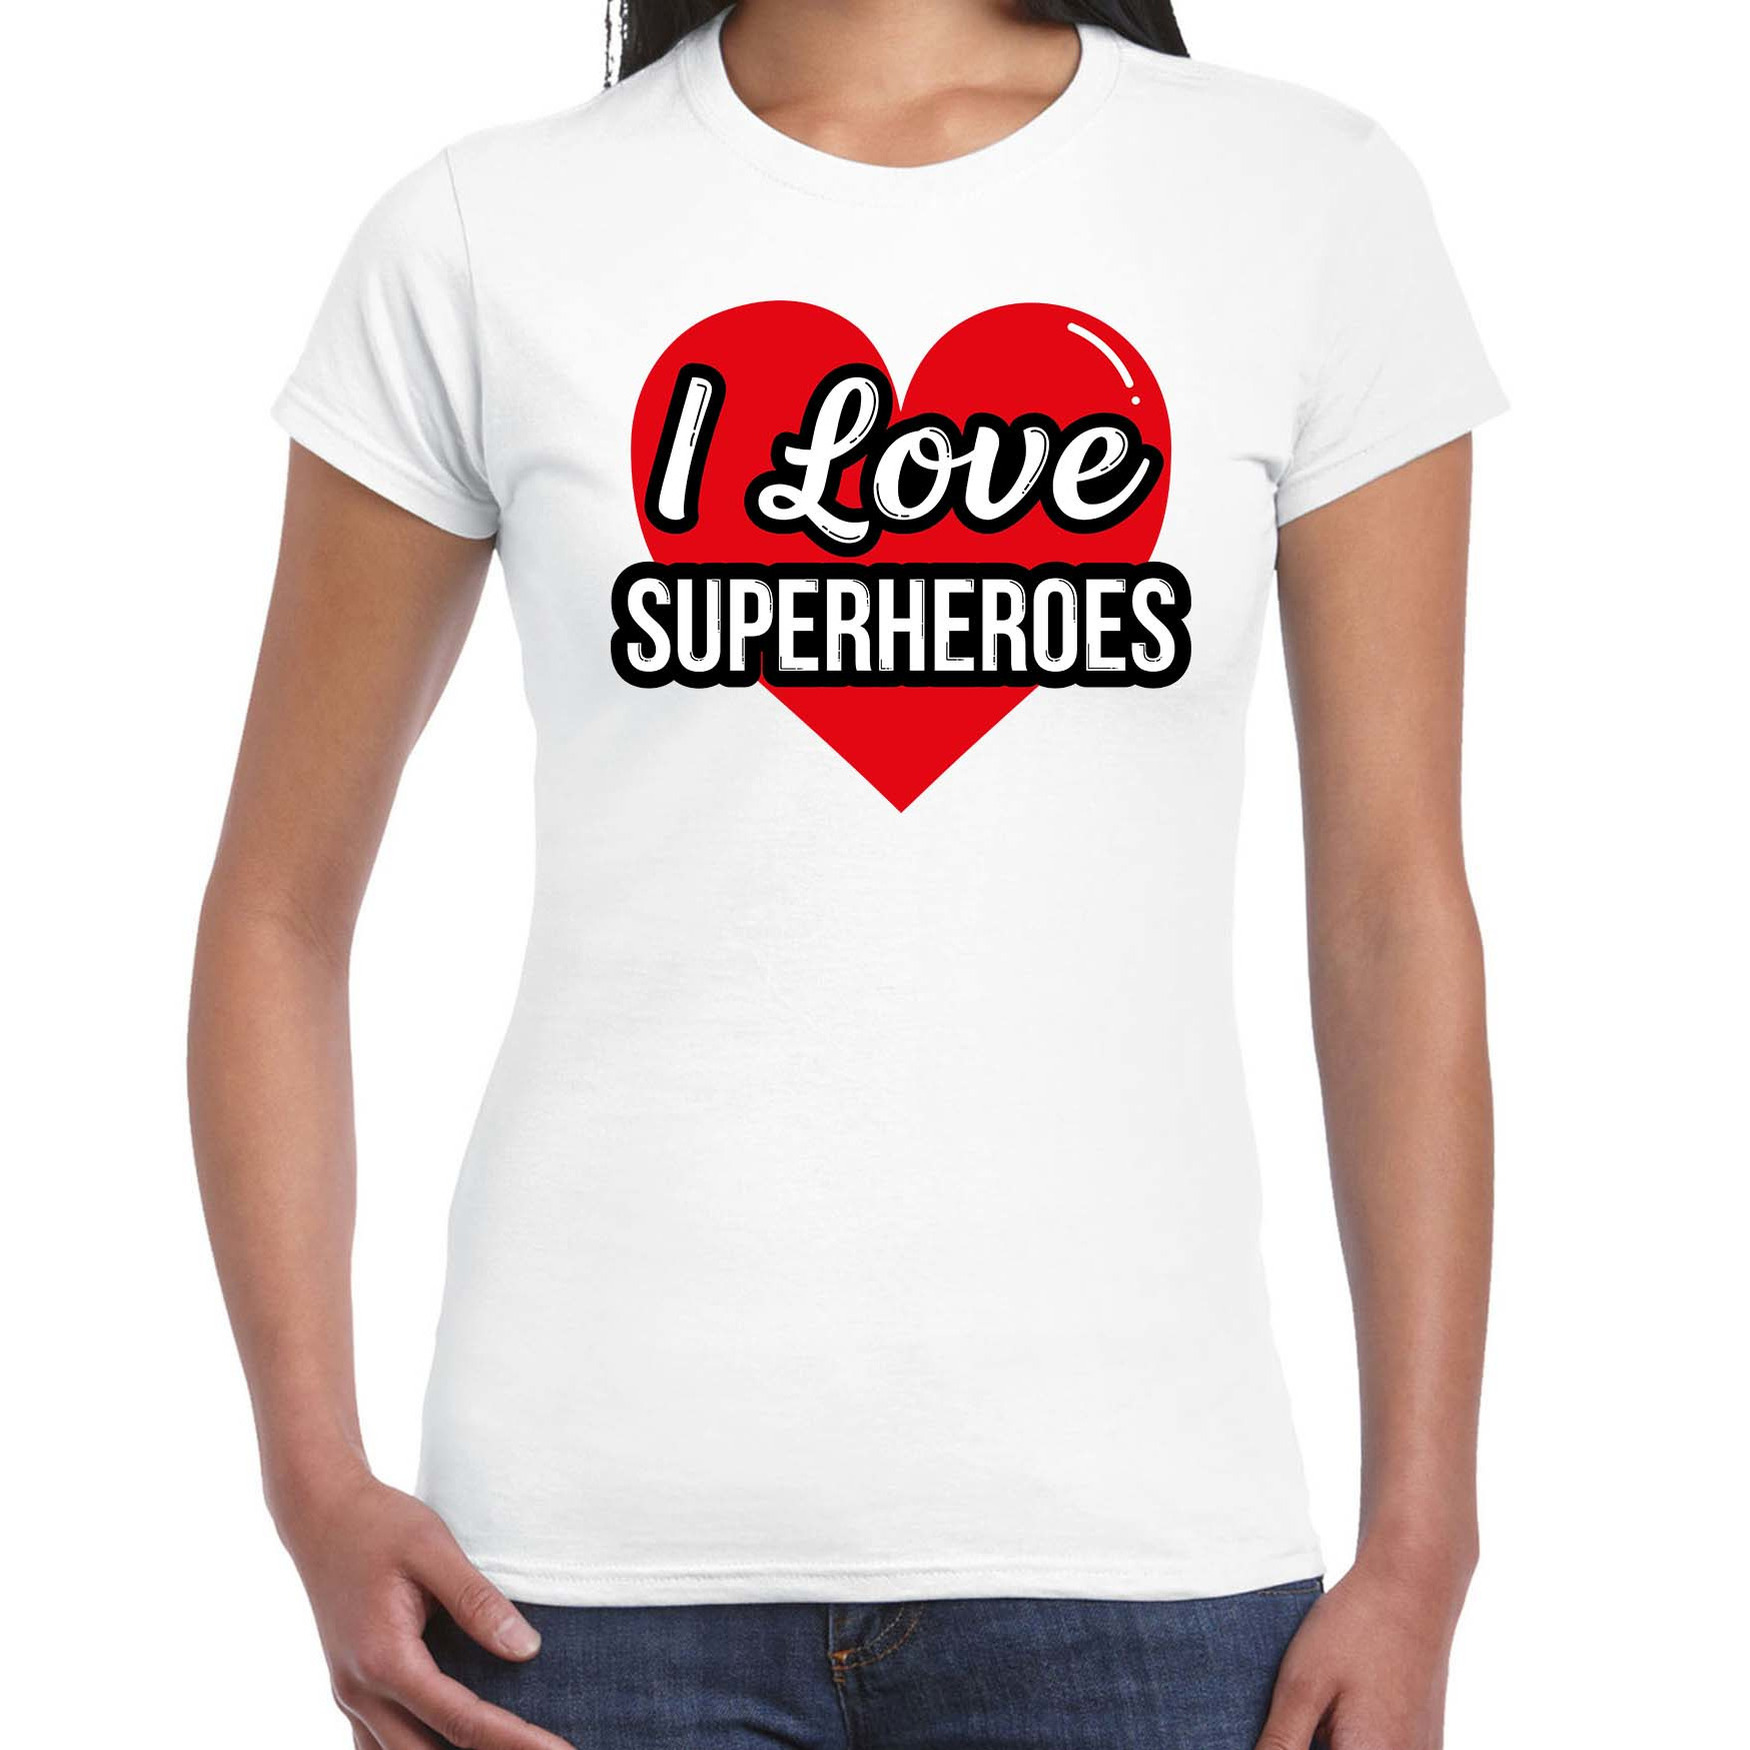 I love superheroes-superhelden verkleed t-shirt wit voor dames Outfit verkleed feest